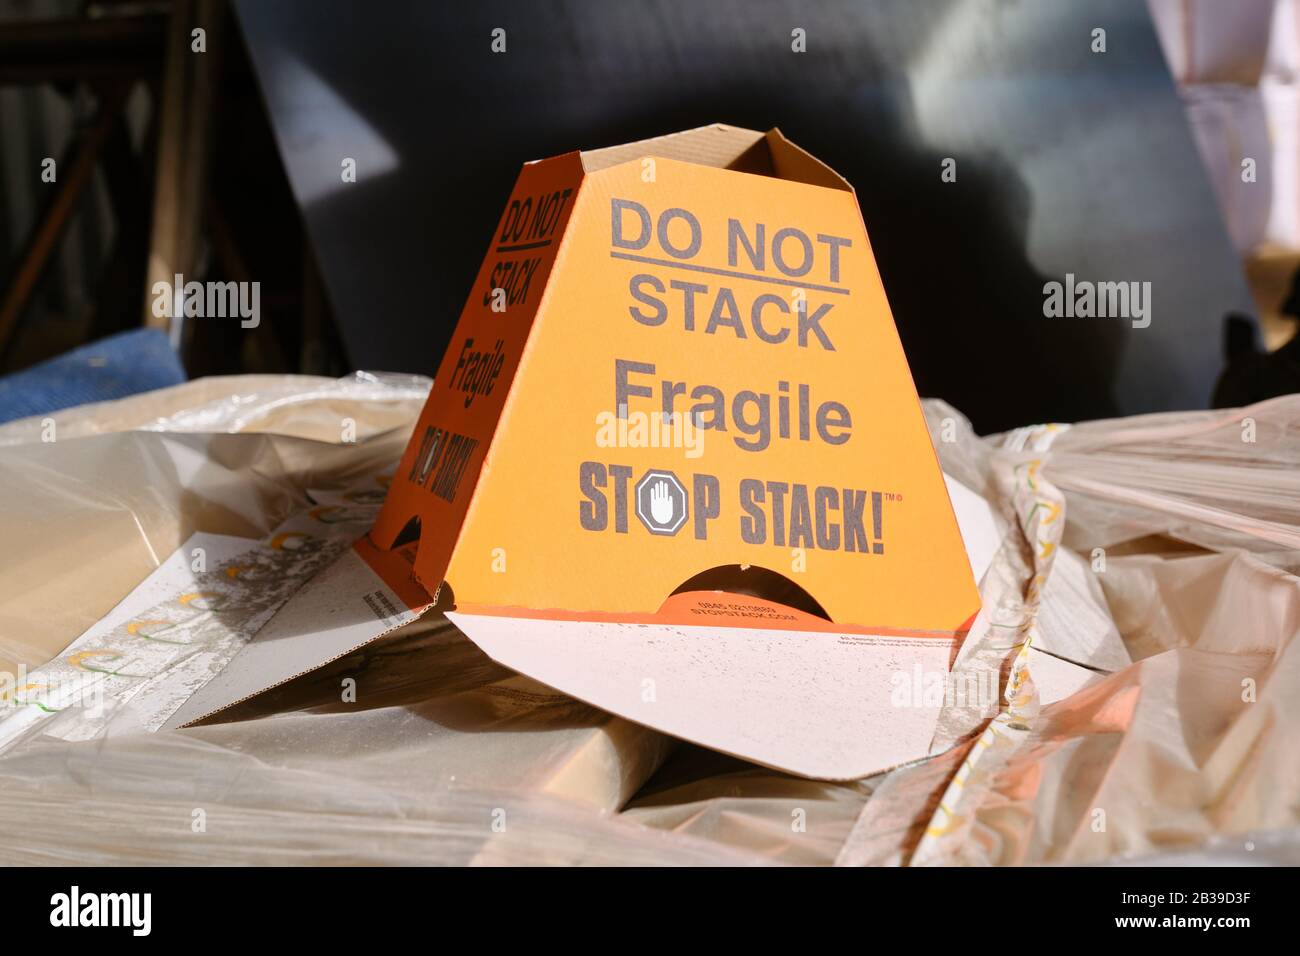 Un dispositivo antiaplastamiento Stop Stack de cartón amarillo que indica no apilar frágil Foto de stock